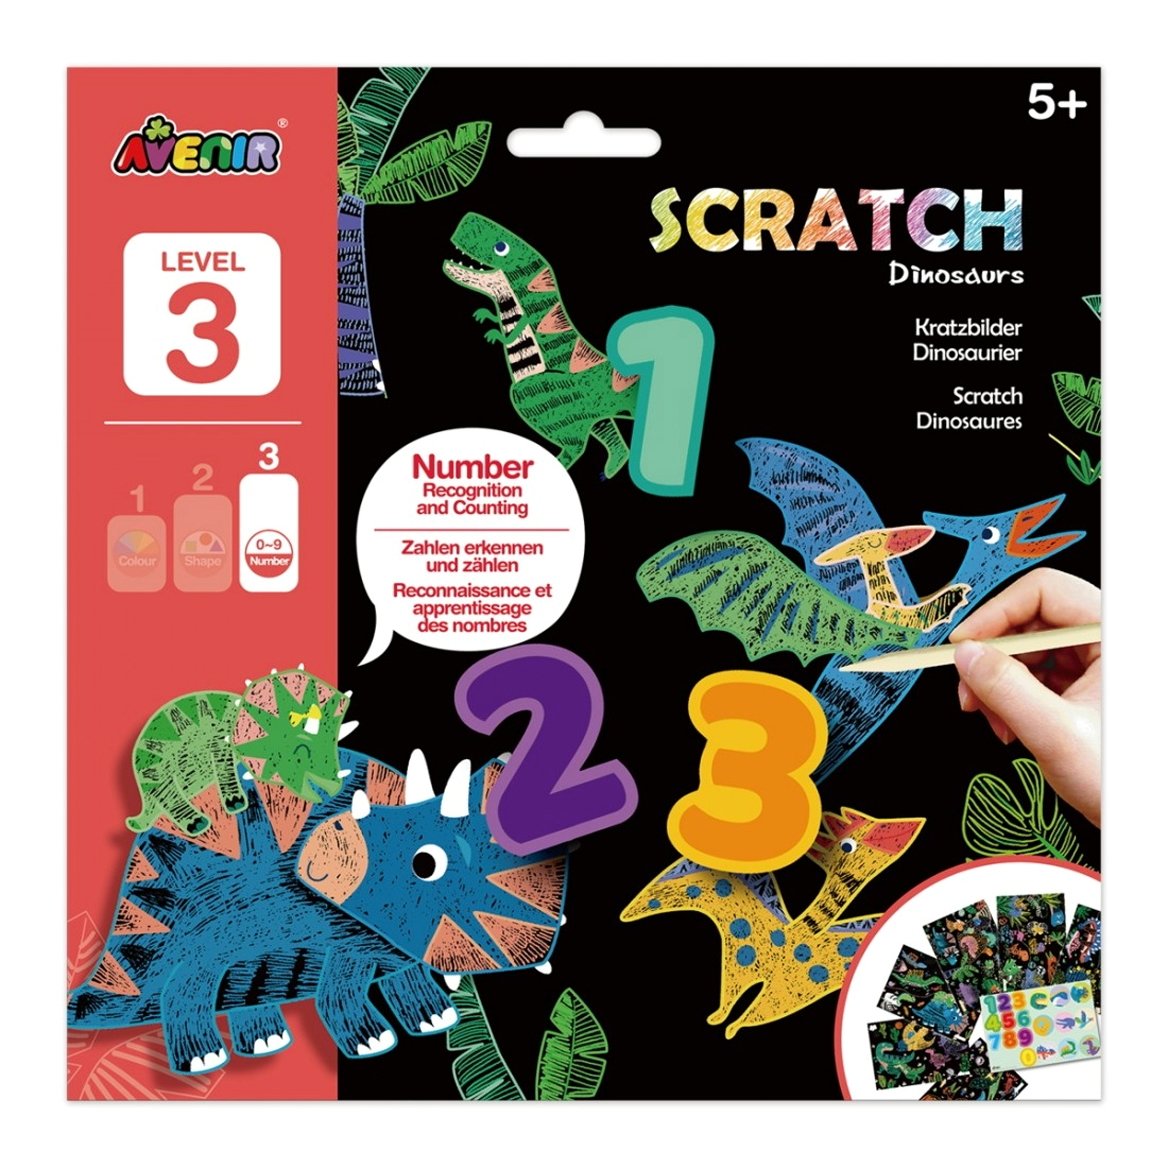 Avenir Scratch Dinosaurs Level 3 Κωδ 60763 Παιδικό Εκπαιδευτικό Παιχνίδι 5+ Years 1 Τεμάχιο 51955